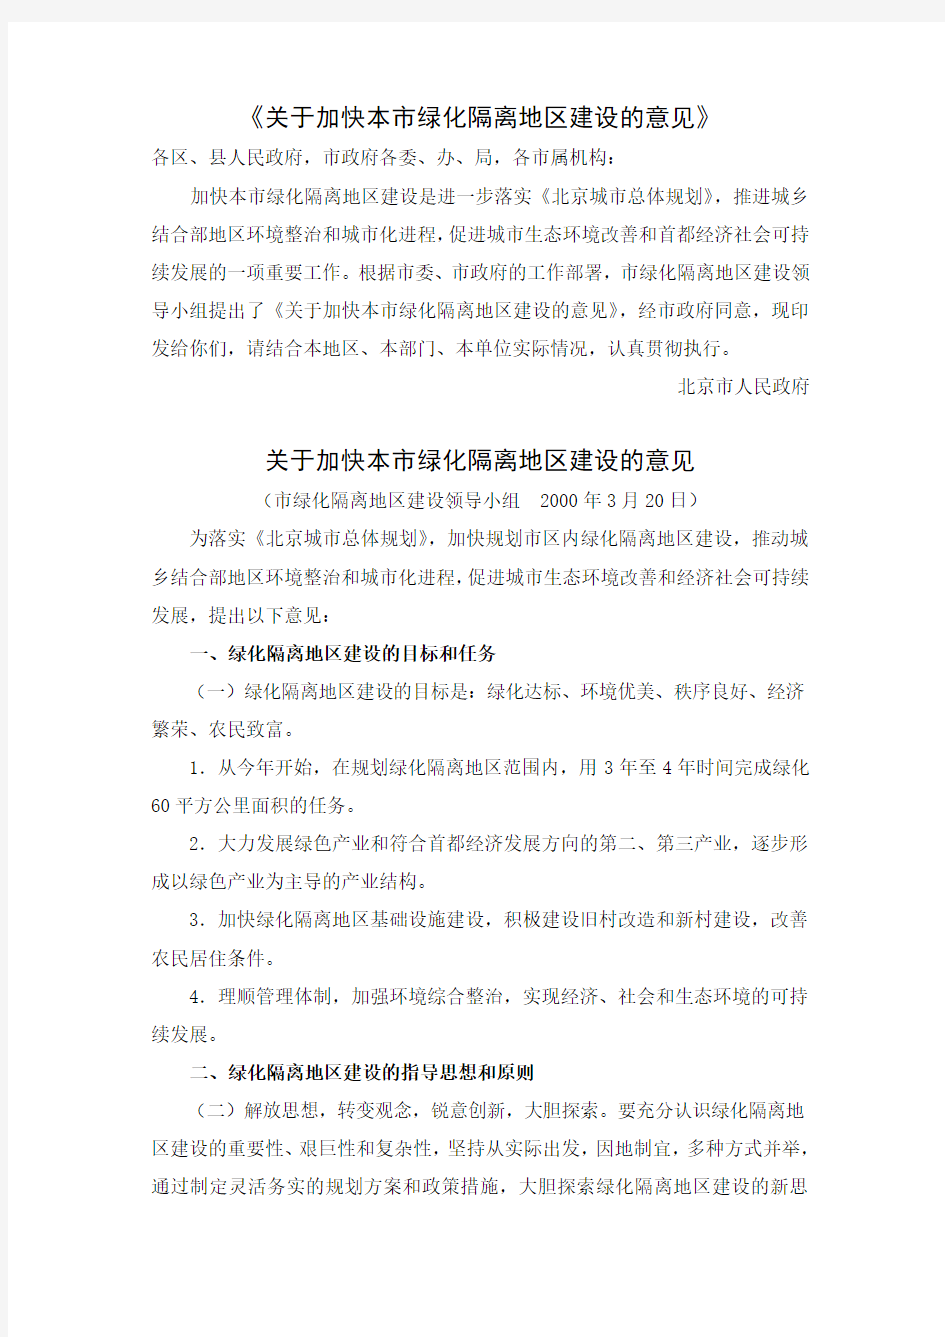 北京市人民政府印发《关于加快本市绿化隔离地区建设的意见》的通知